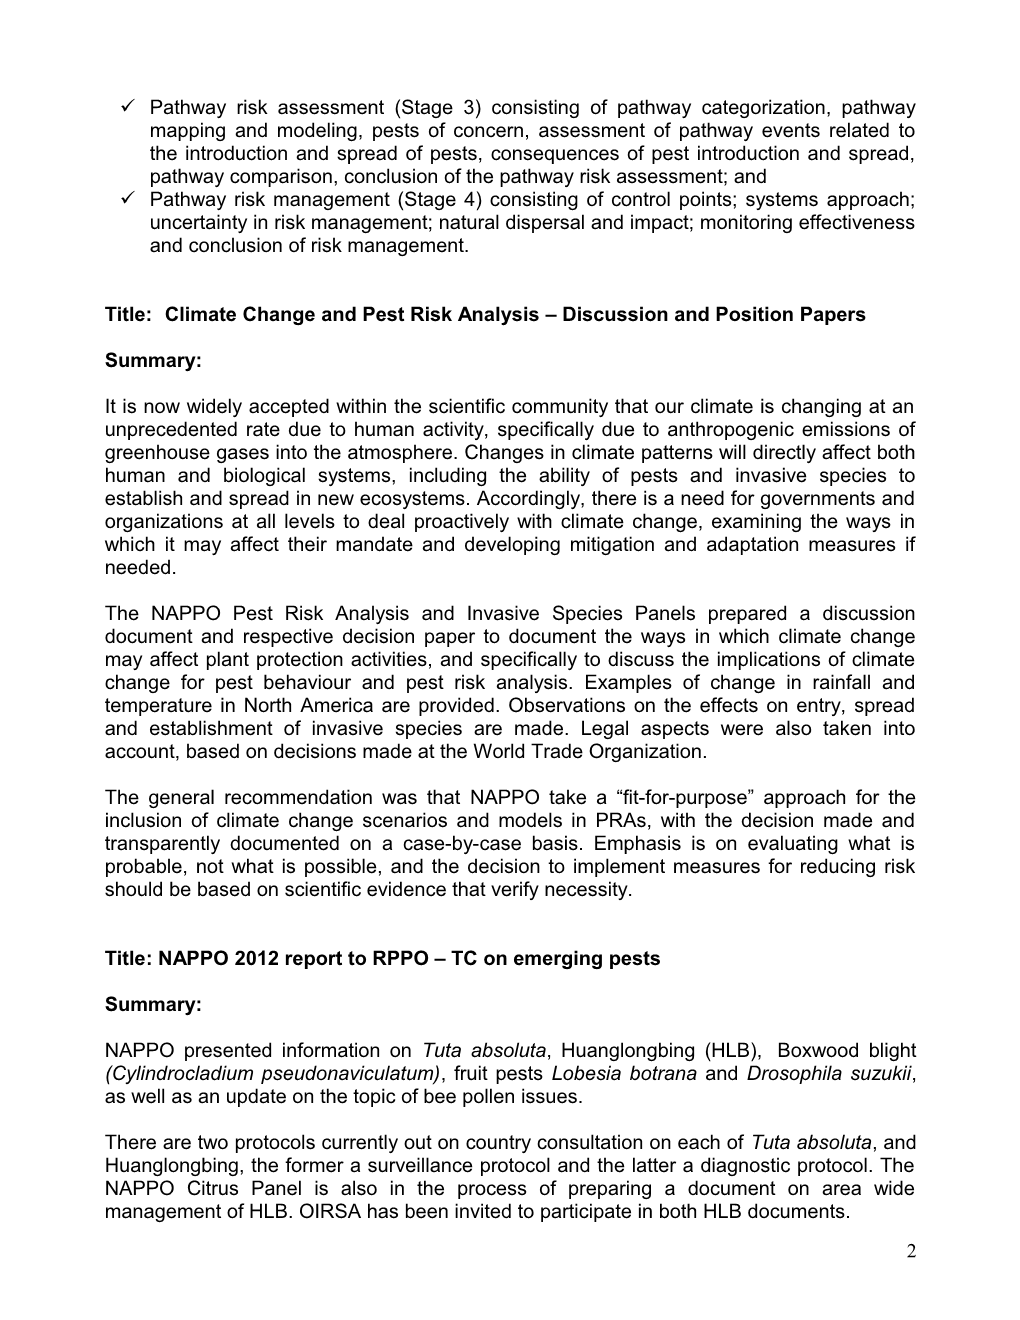 Summaries for NAPPO Presentations at 24Th RPPO-TC